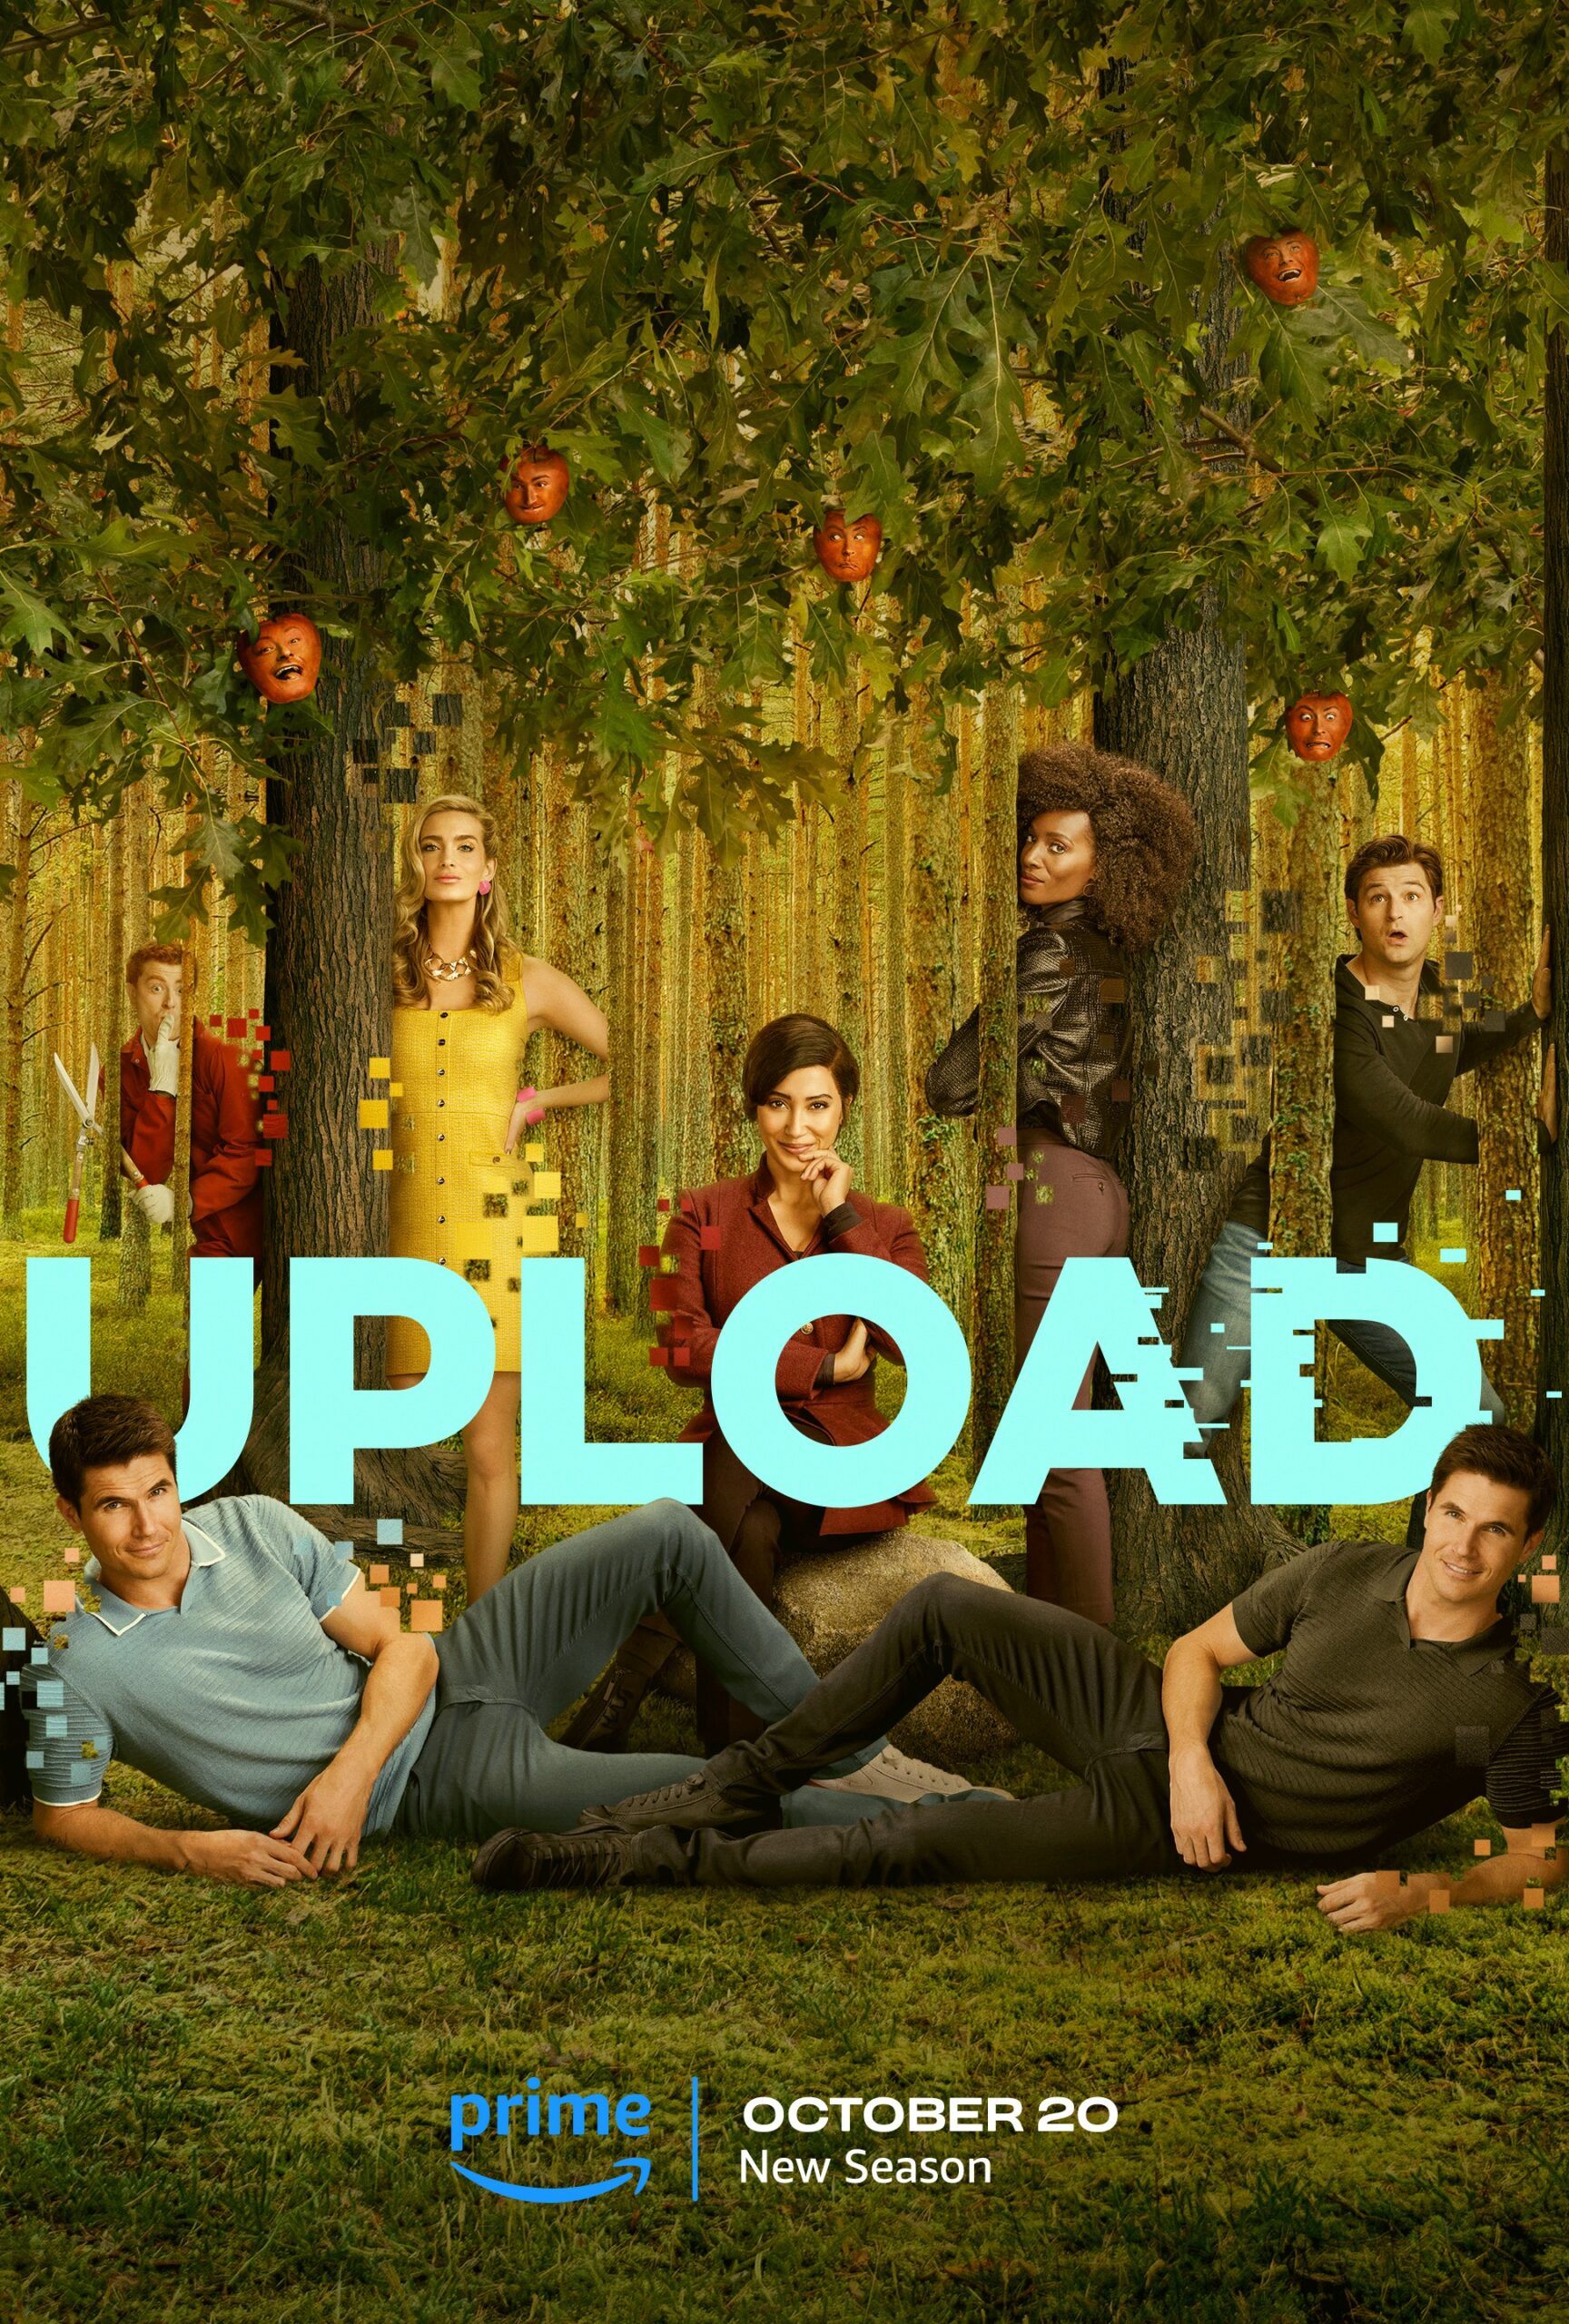 [TV] Upload Season 2 (Prime)